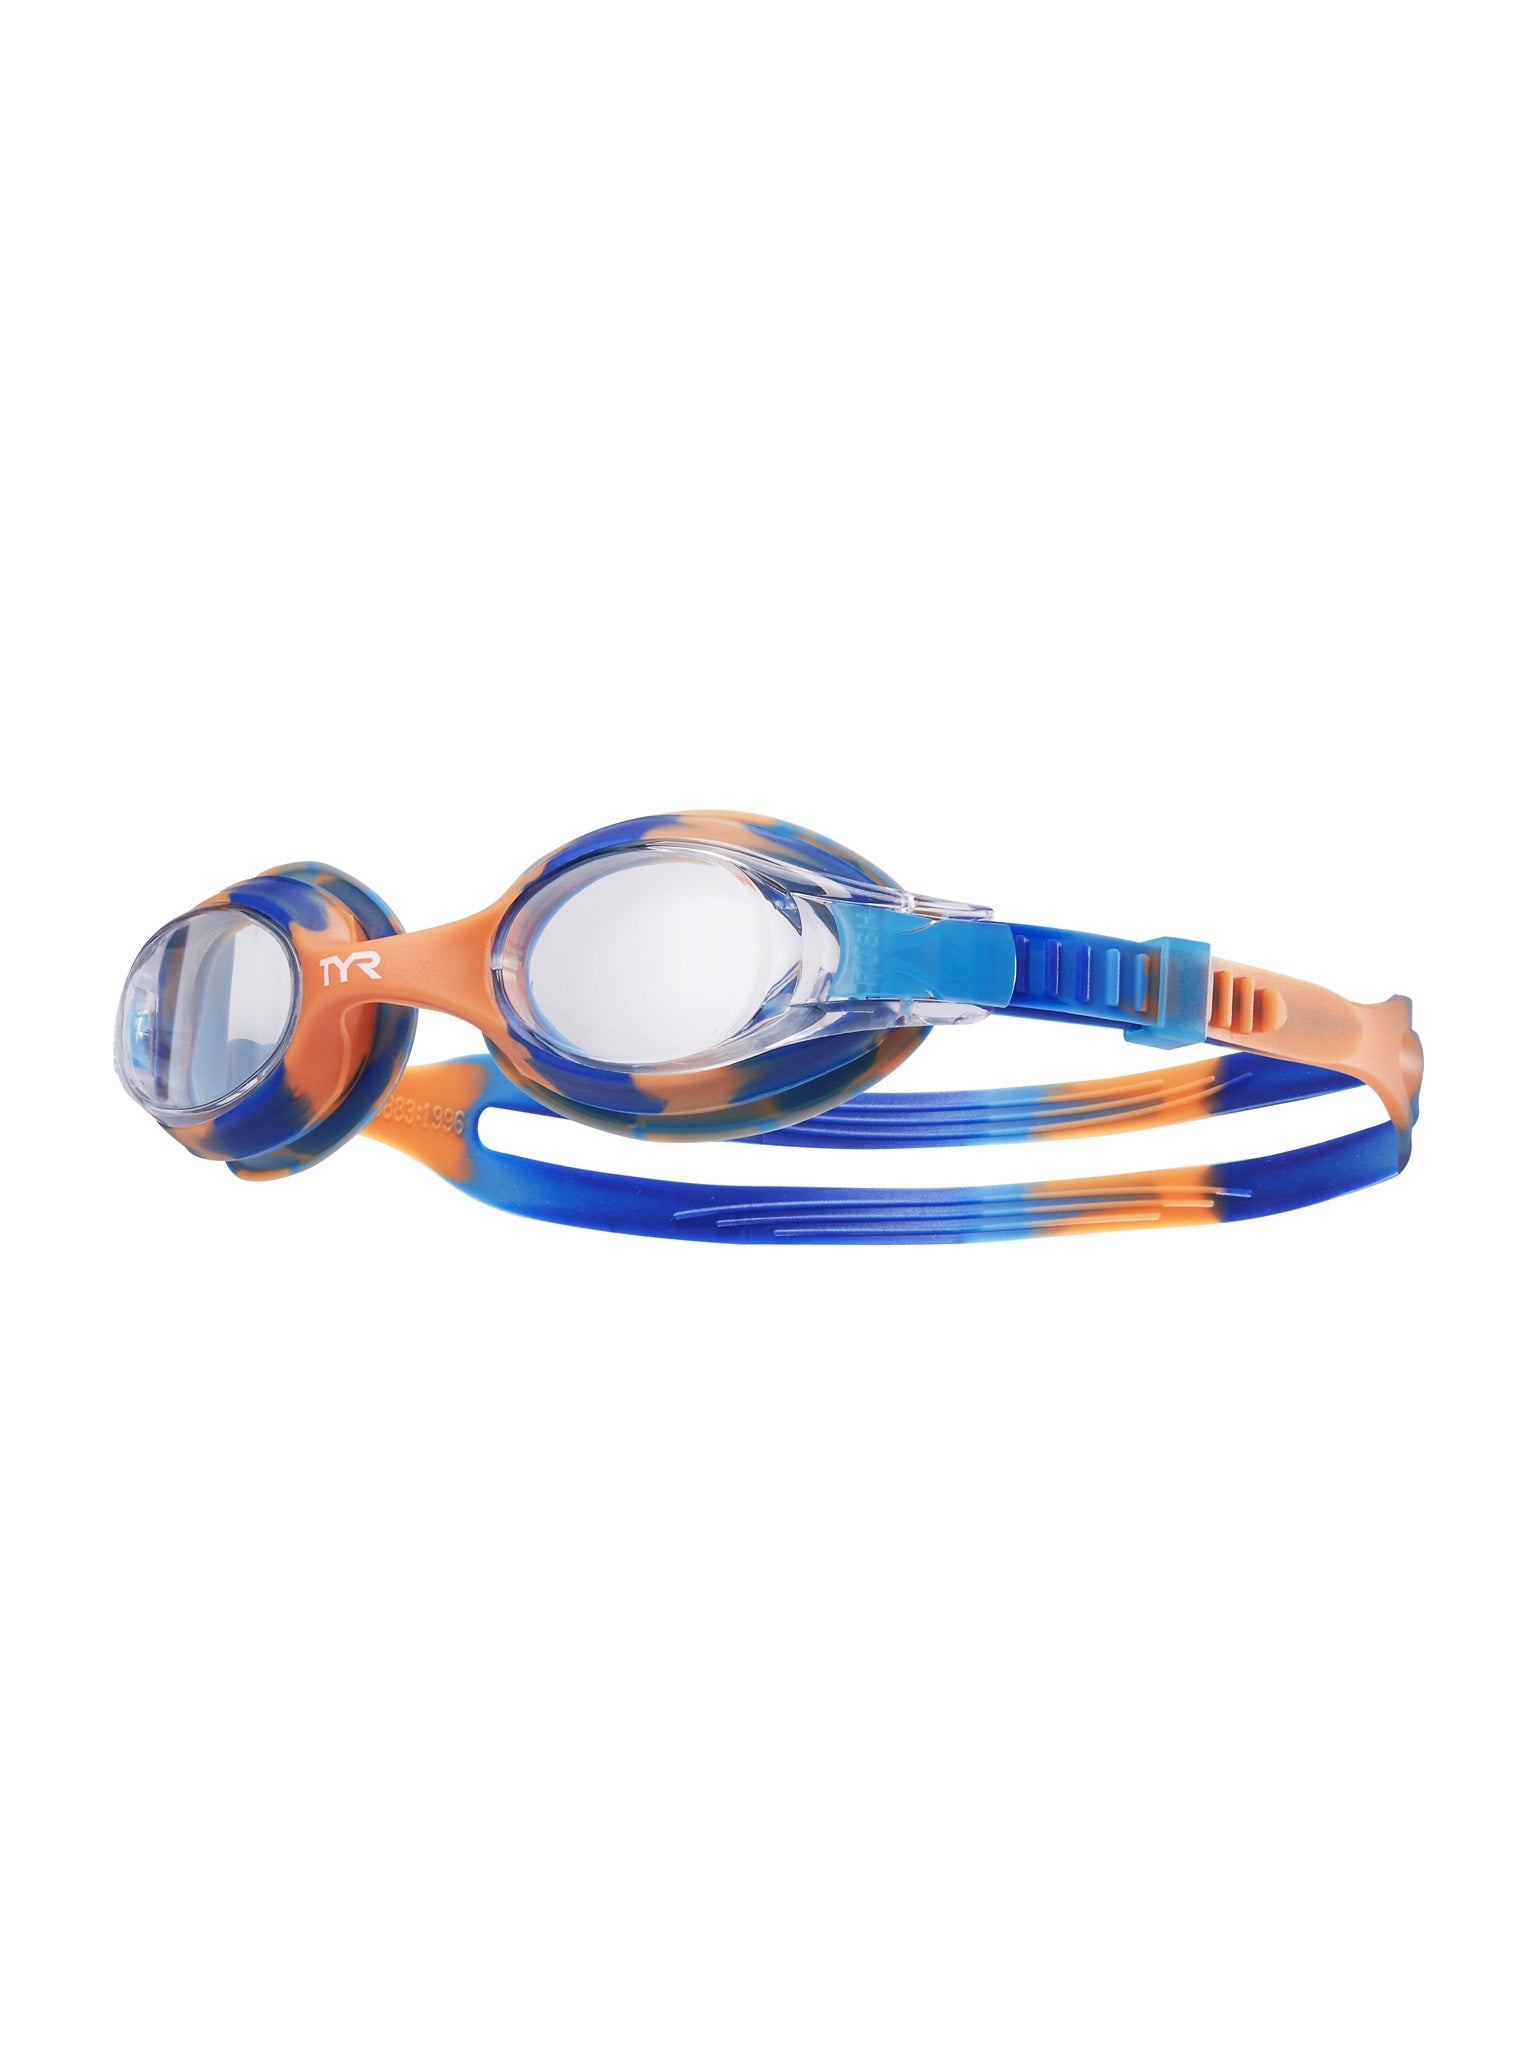 Lunettes de natation Swimple Tie-Dye pour enfants - Bleu/Orange